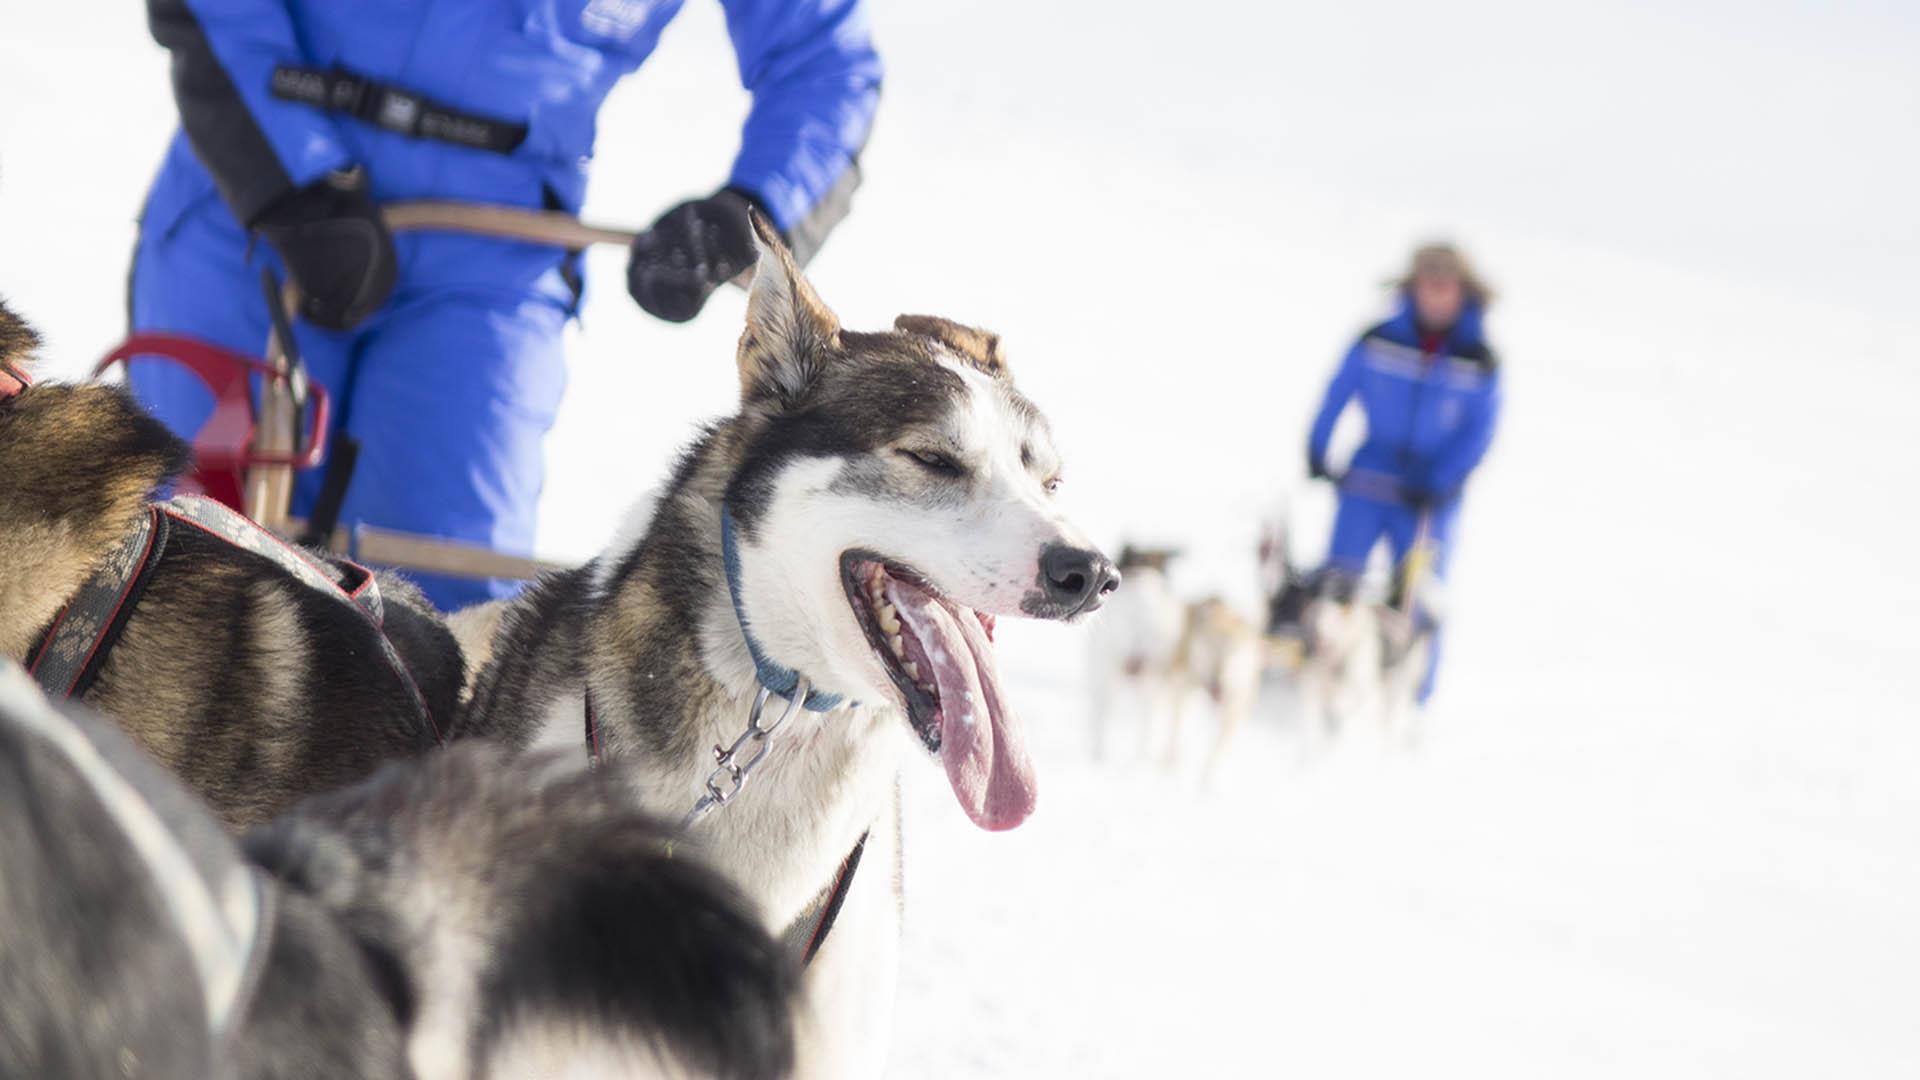 Nahaufnahme eines Huskies, der mit seinem Team einen Schlitten durch weiße Winterlandschaft zieht. Das nachfolgende Hundegespann kann man im Hintergrund undeutlich sehen.